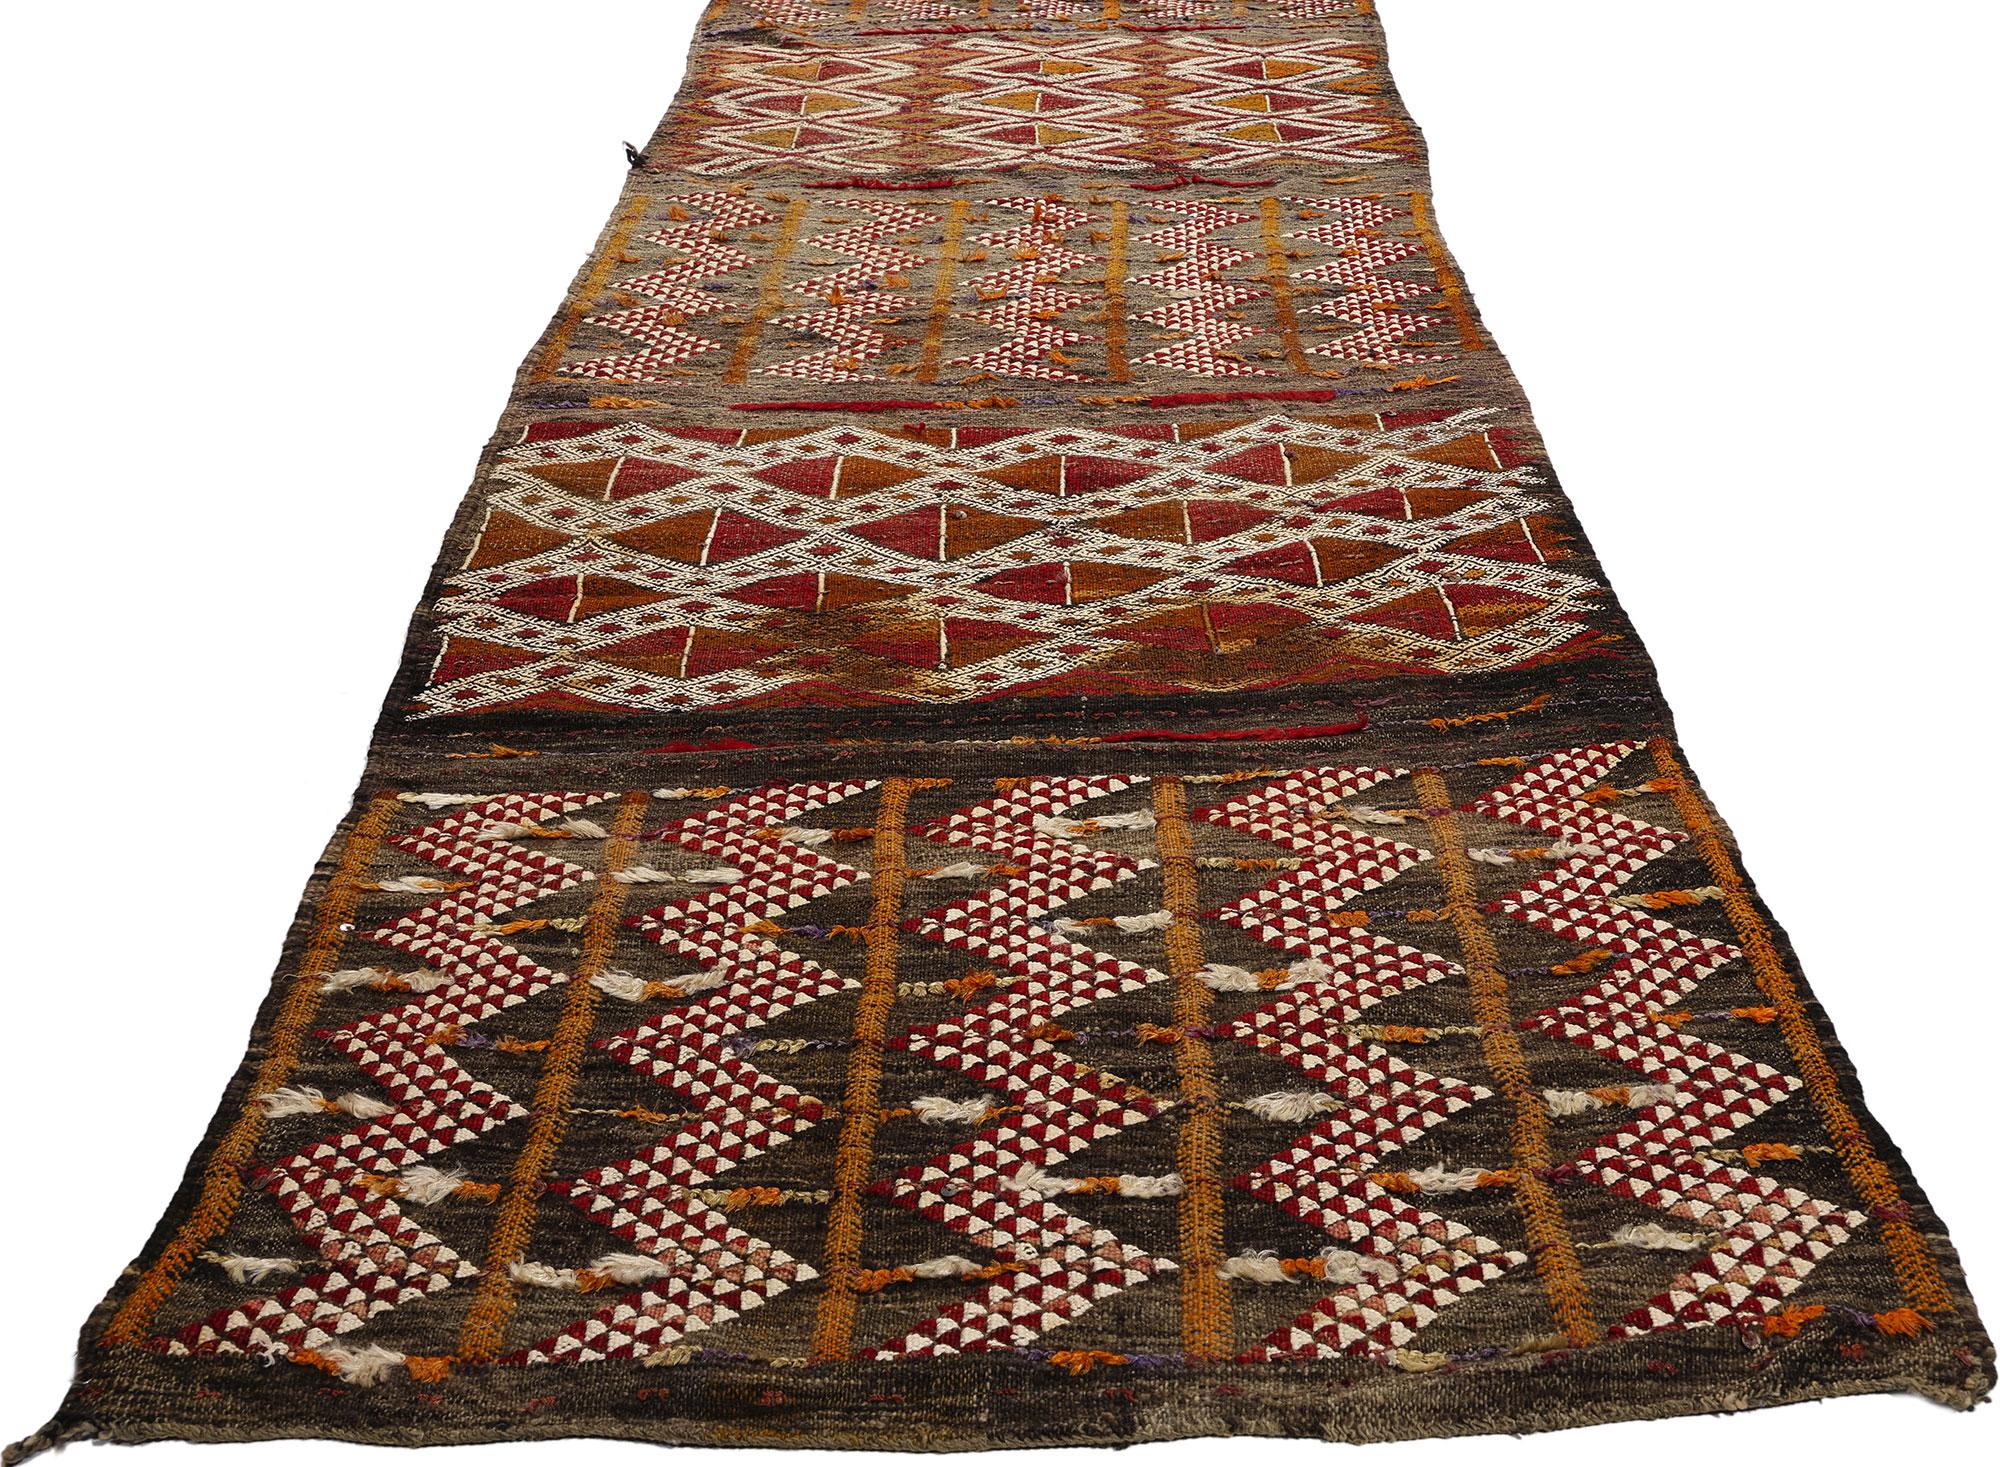 21777 Vintage Marokkanischer Zemmour Kilim Teppich, 02'07 x 23'02. Wir präsentieren einen exquisiten marokkanischen Kelimläufer im Vintage-Stil, der von den geschickten Kunsthandwerkern des Zemmour-Stammes im malerischen Mittleren Atlasgebirge von